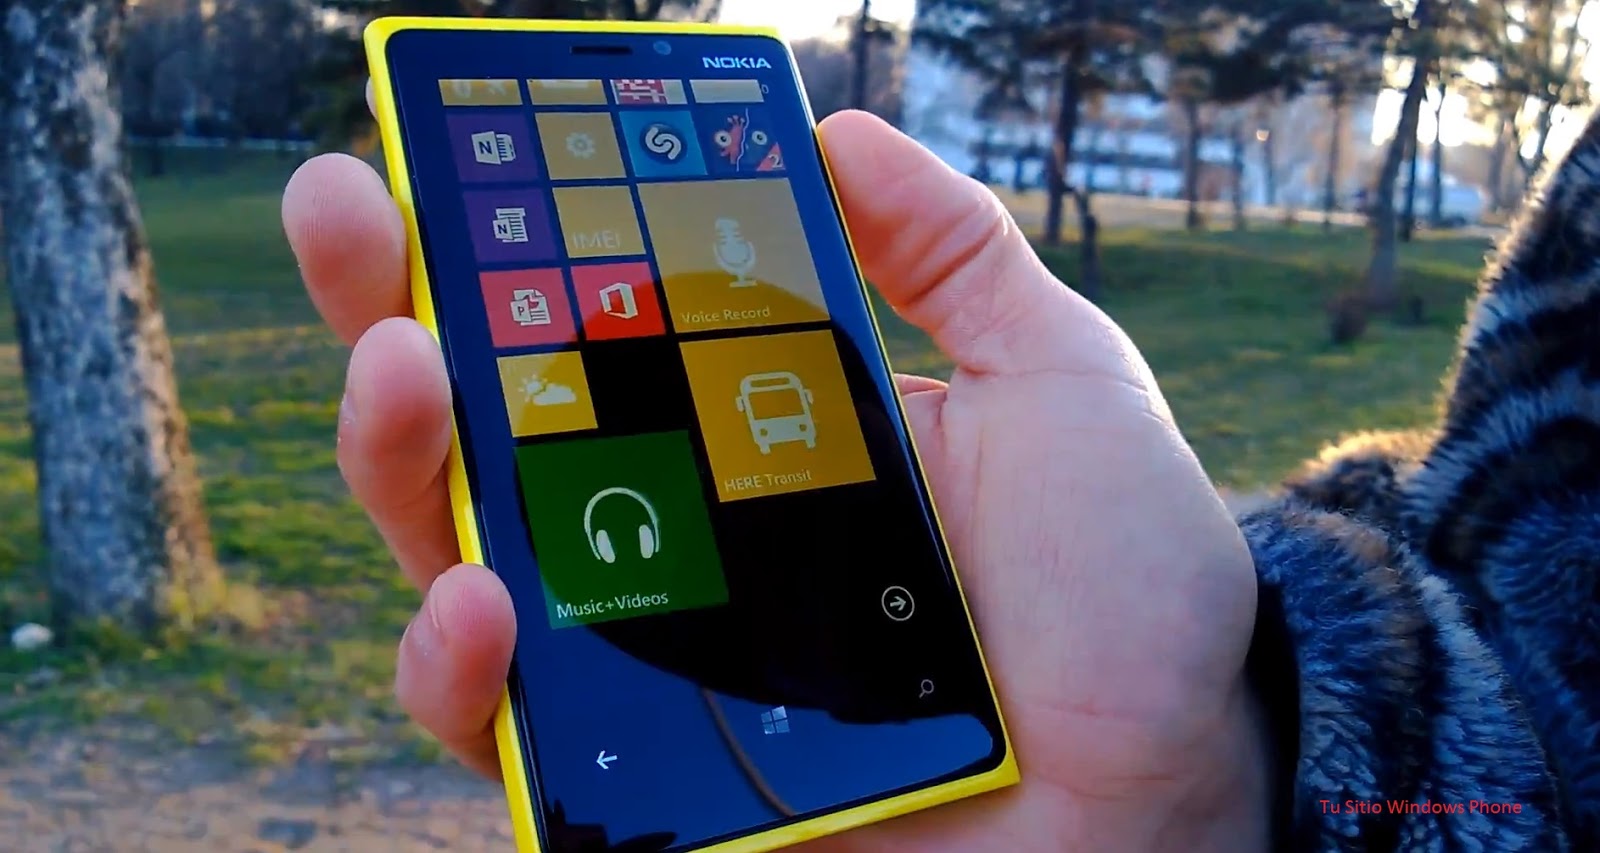 ¿Que estarían dispuestos a hacer por un Nokia Lumia?